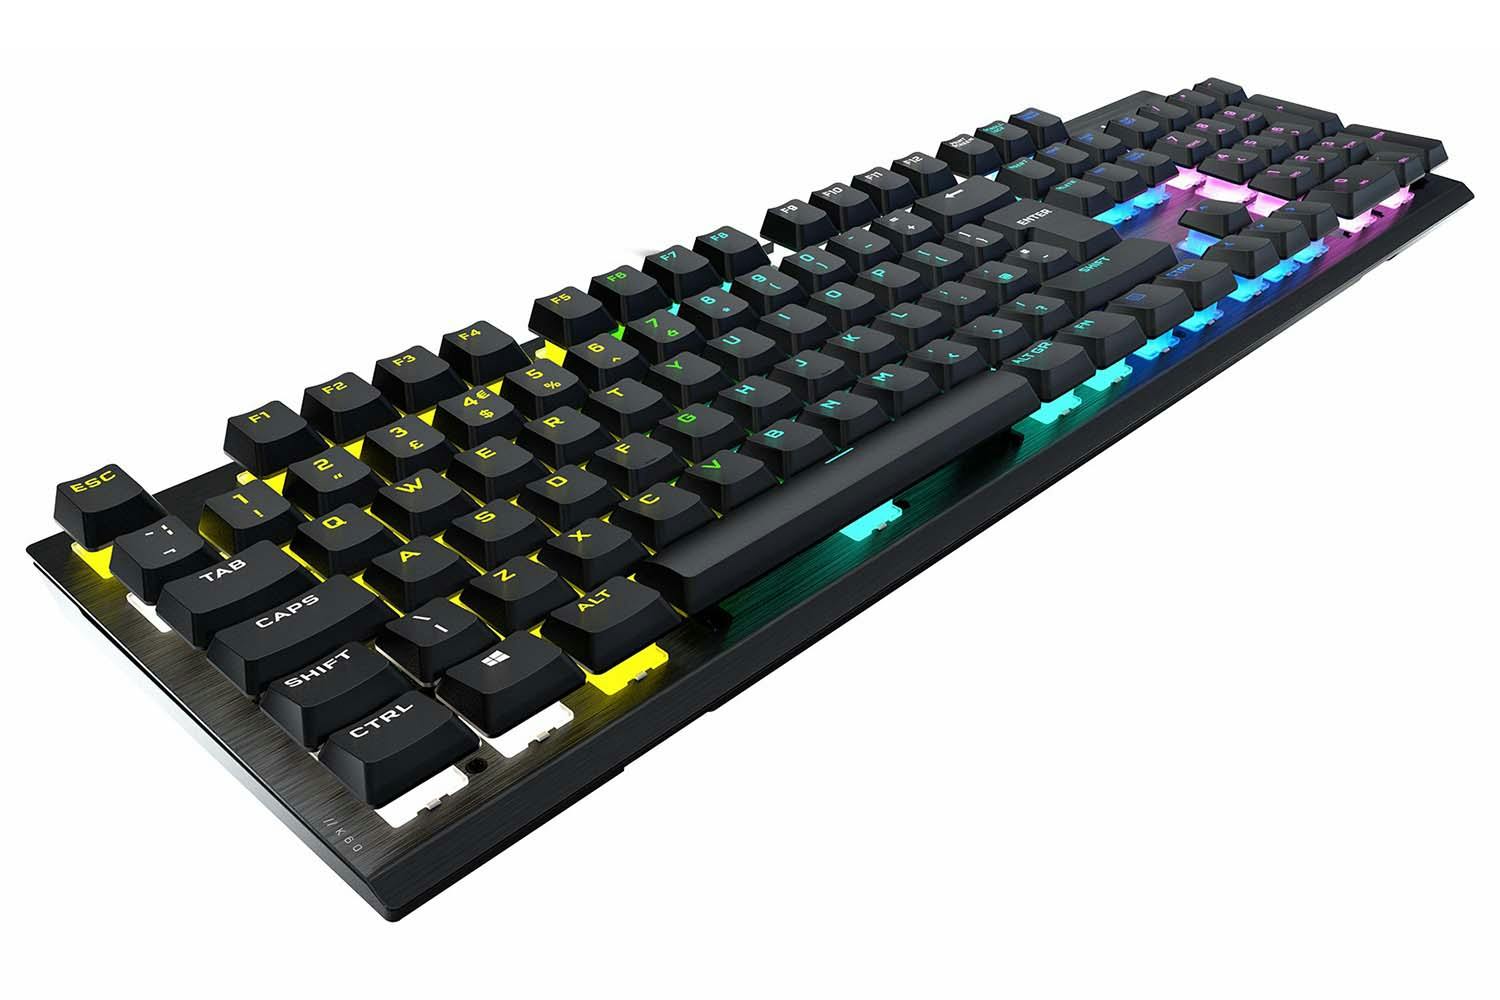 Corsair K70 RGB Pro Mechanical Gaming Keyboard | Black